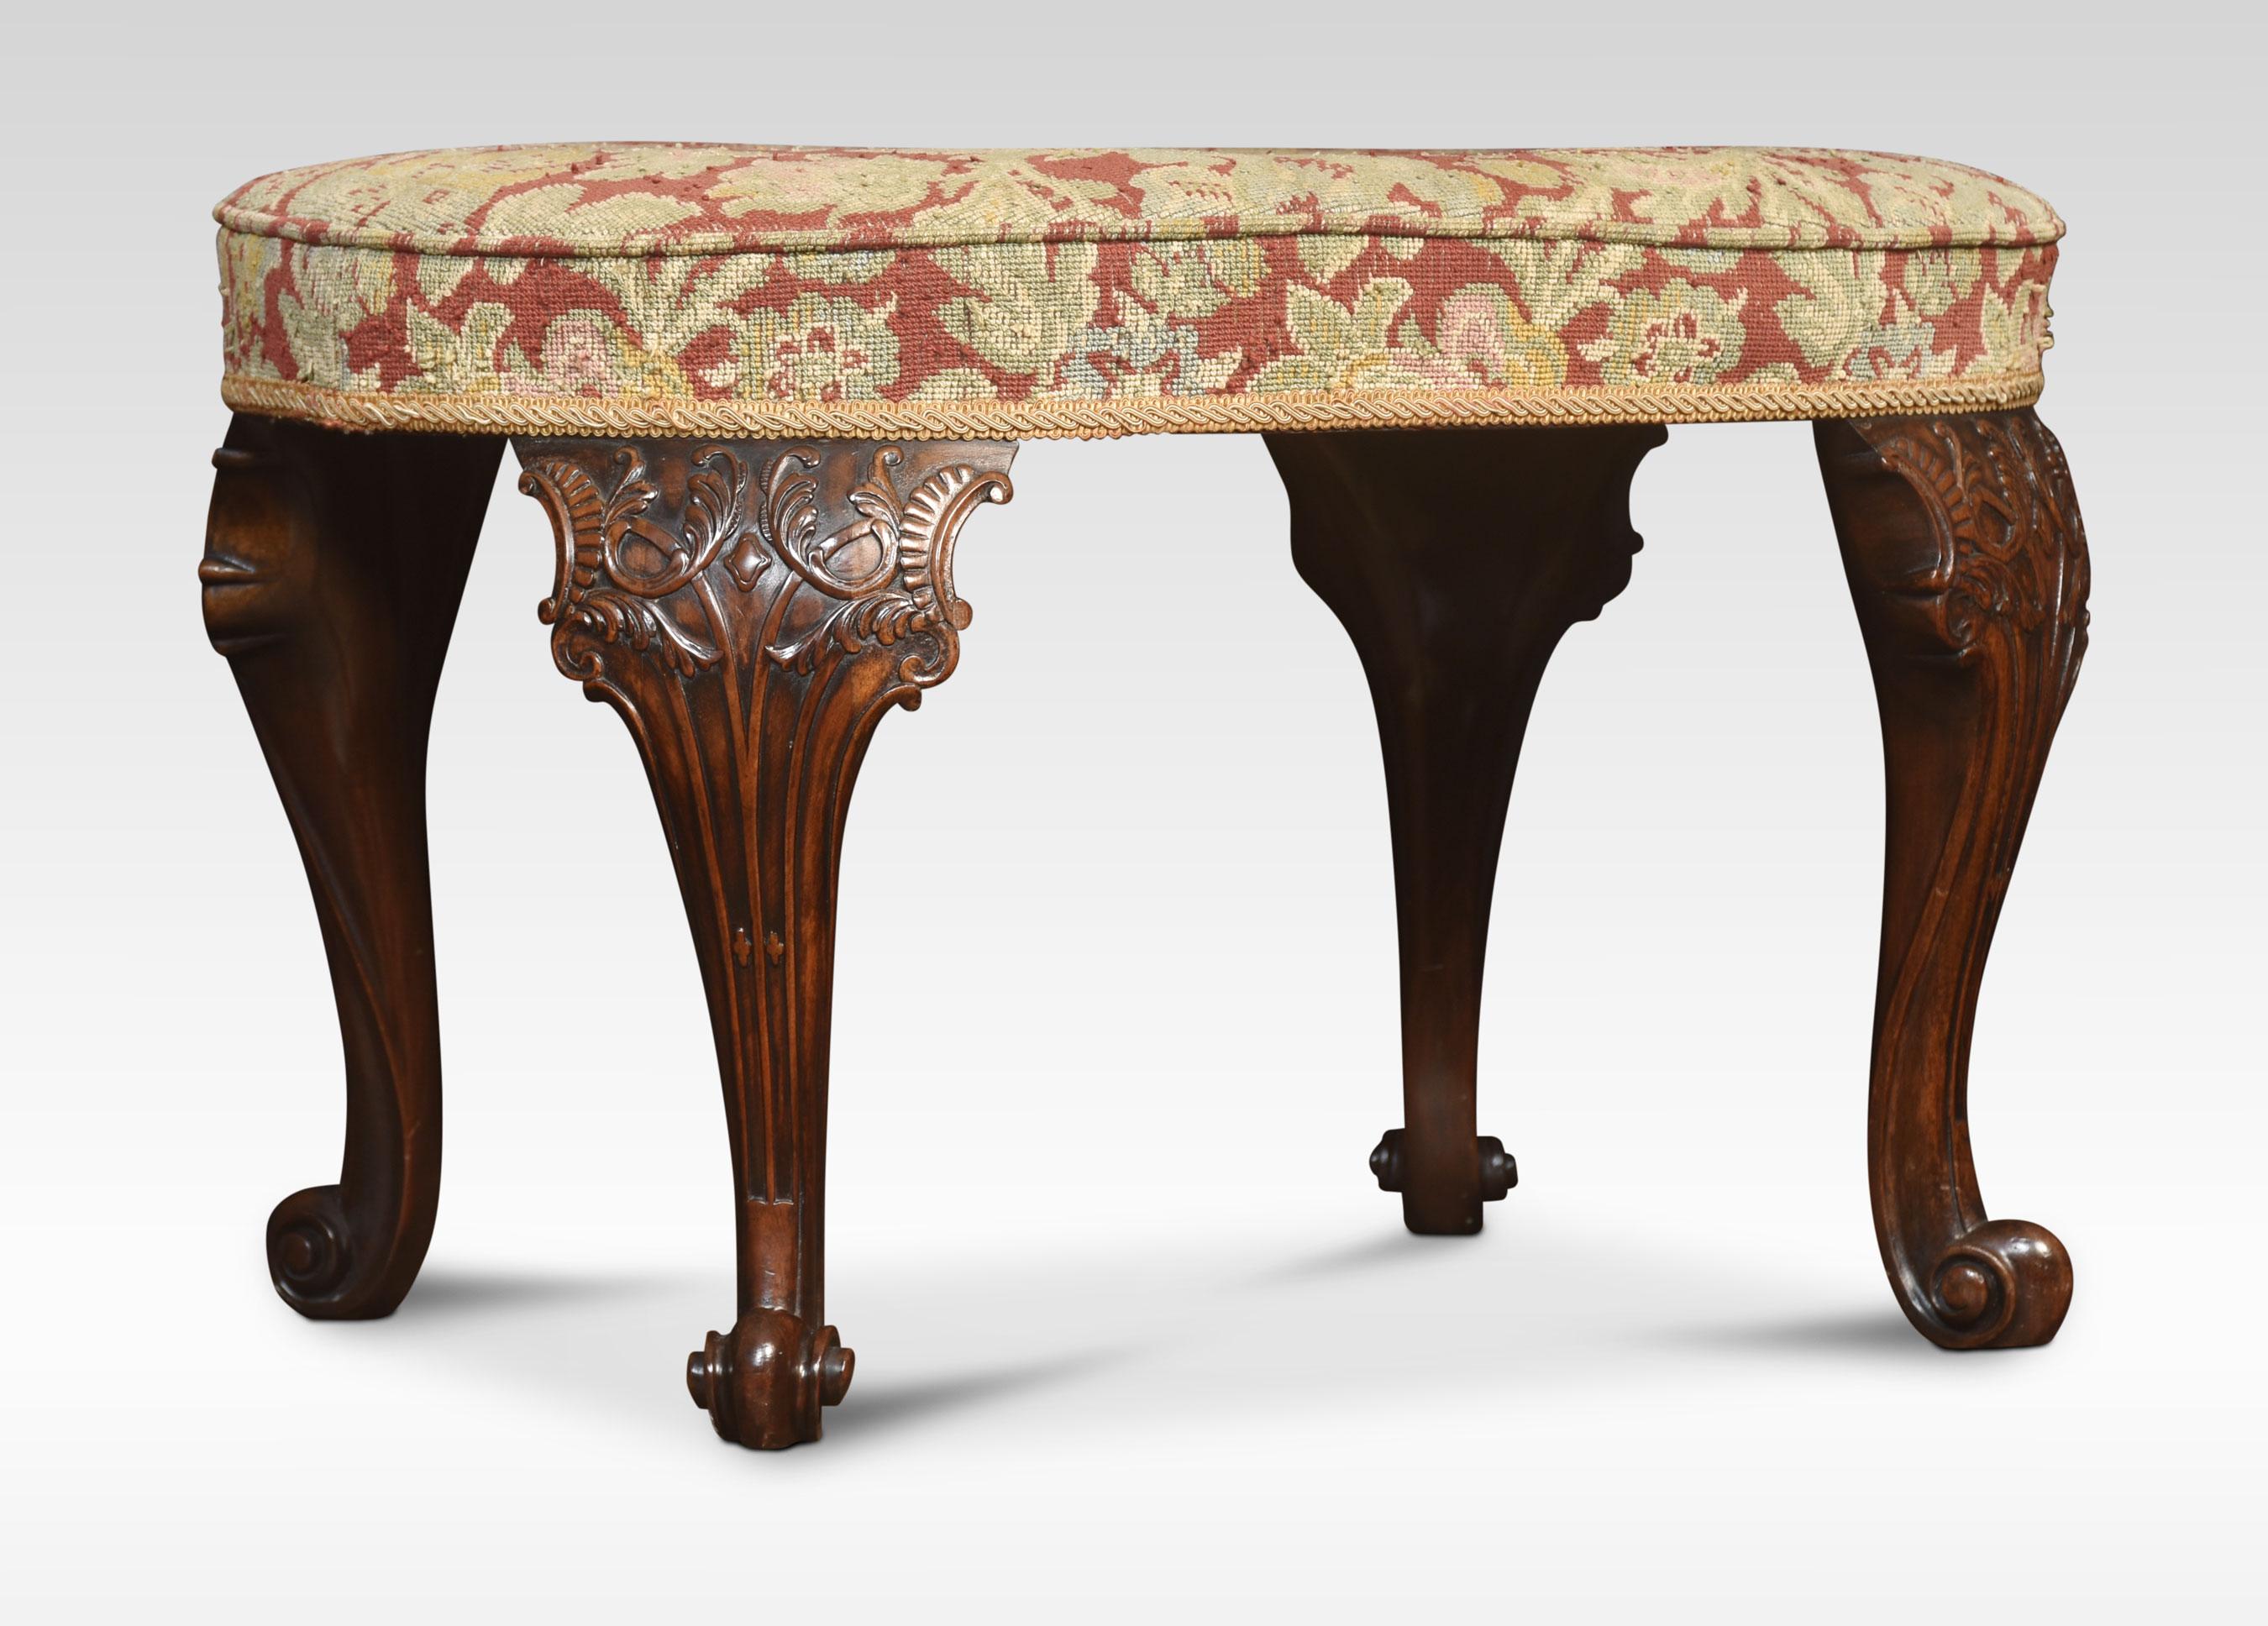 Tabouret rembourré de style George II en acajou, aux proportions d'un tétras. L'assise est recouverte de tapisserie. Elle repose sur des pieds cabriole sculptés de feuillages, terminés par des orteils en volutes.
Dimensions
Hauteur 18